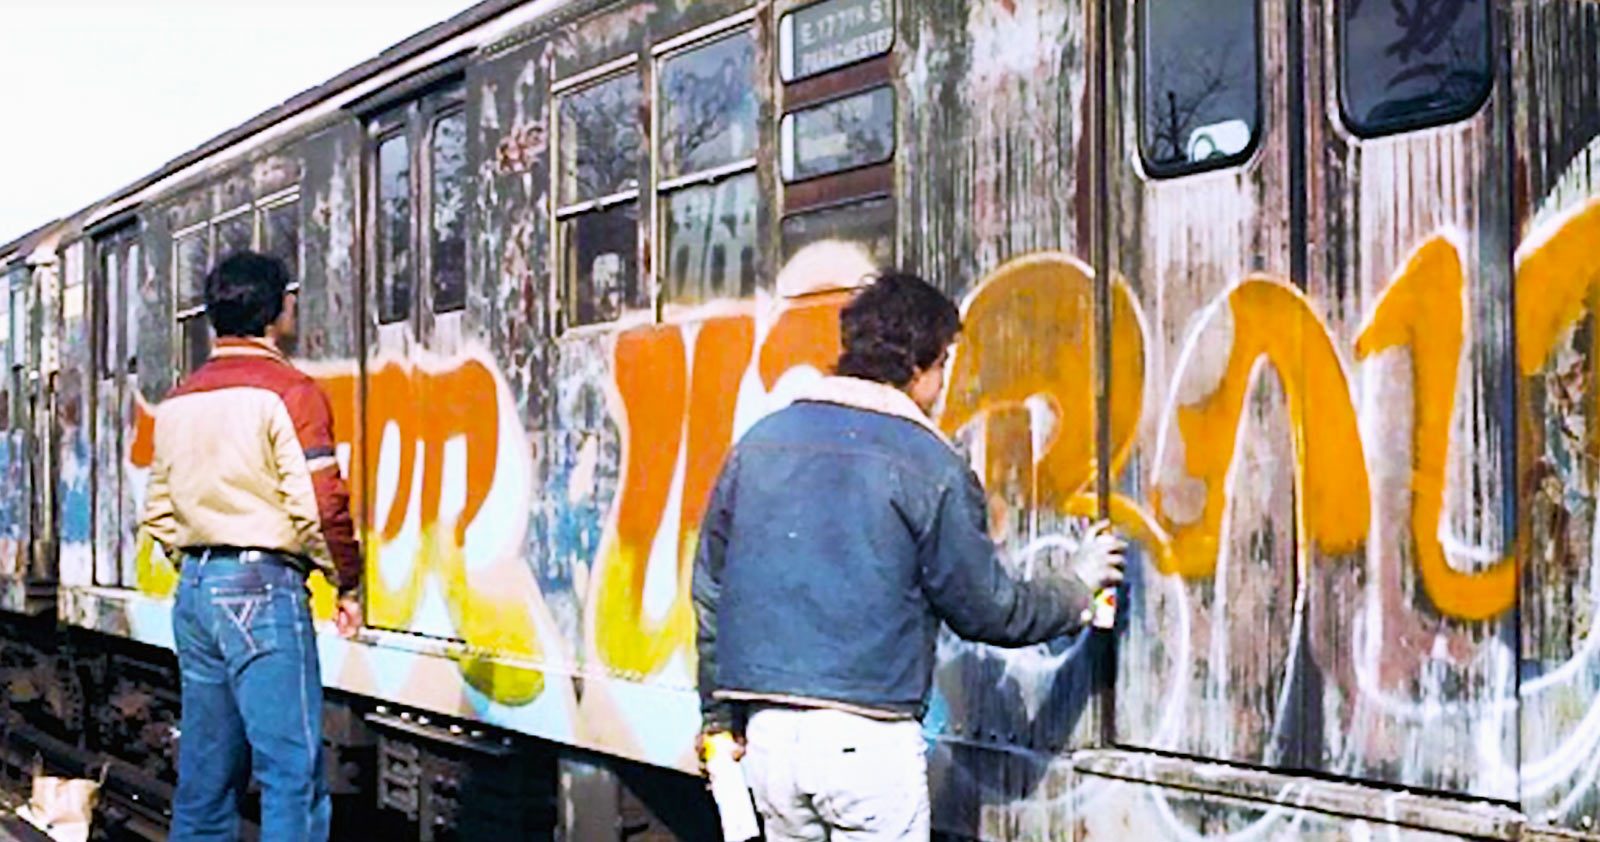 The Rise of Graffiti Writing, Saison 2